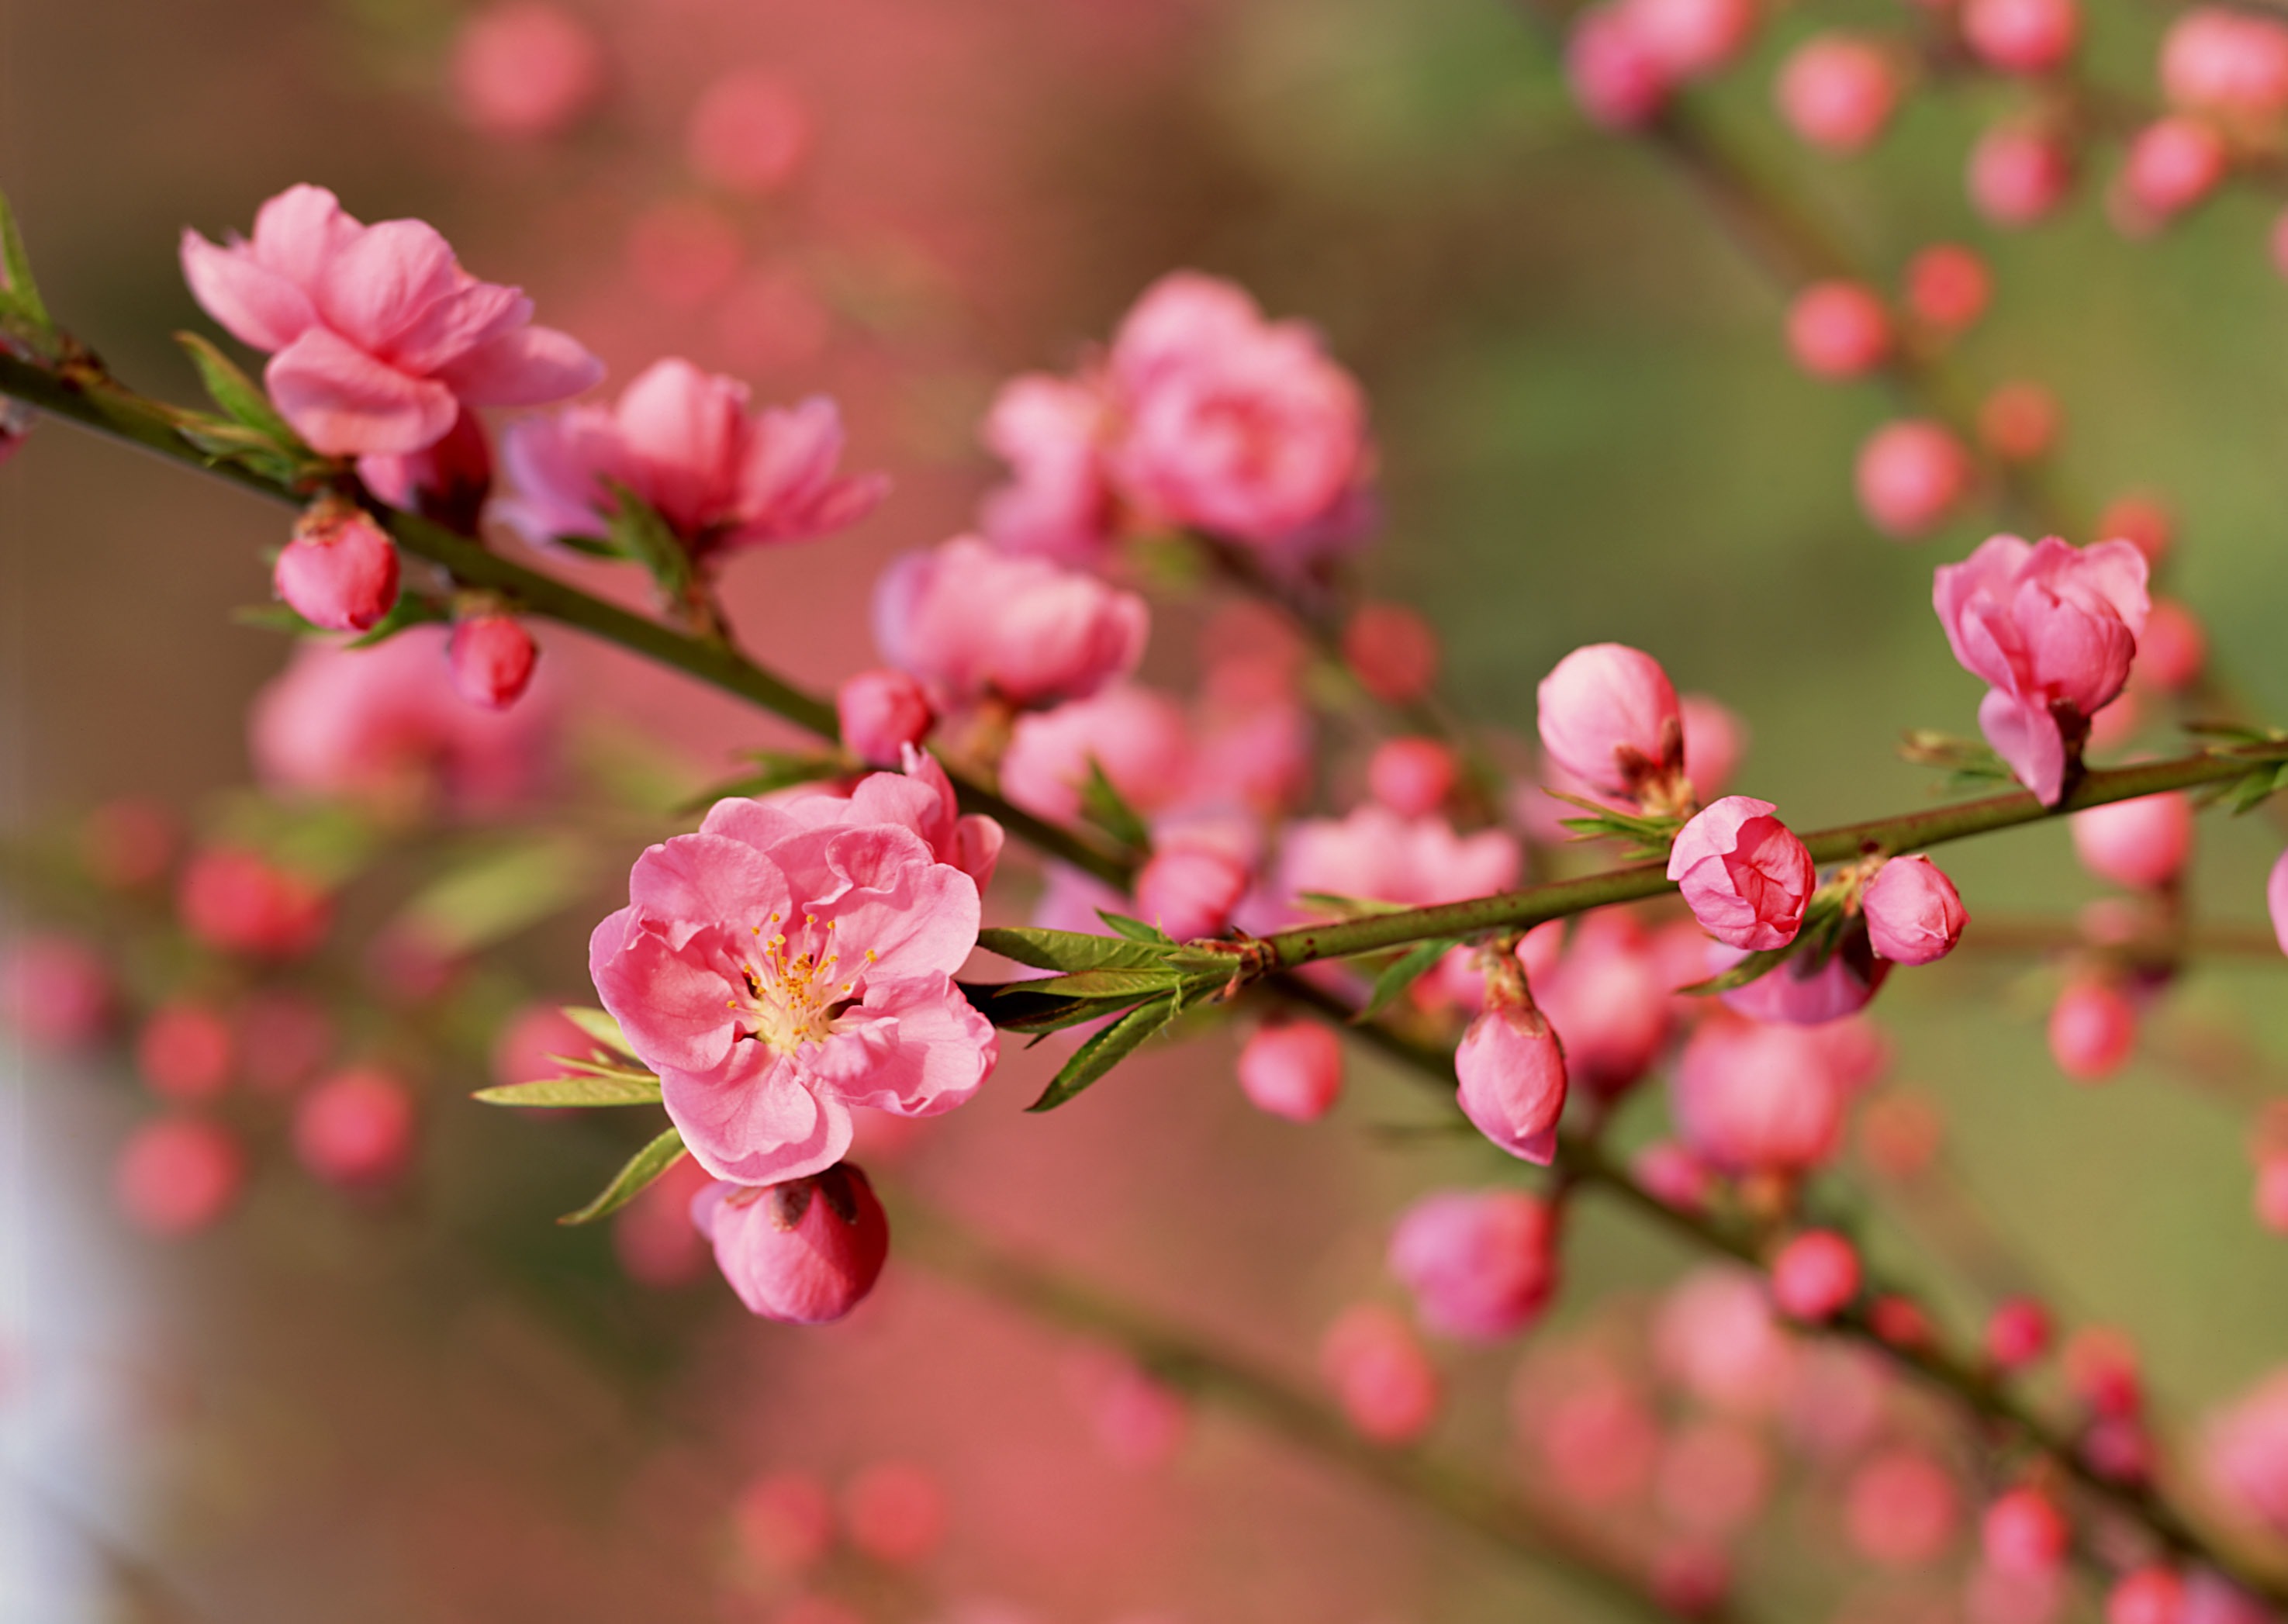 Hoa đào đã trở thành loài hoa quen thuộc mỗi độ Tết đến xuân về của người Việt Nam.